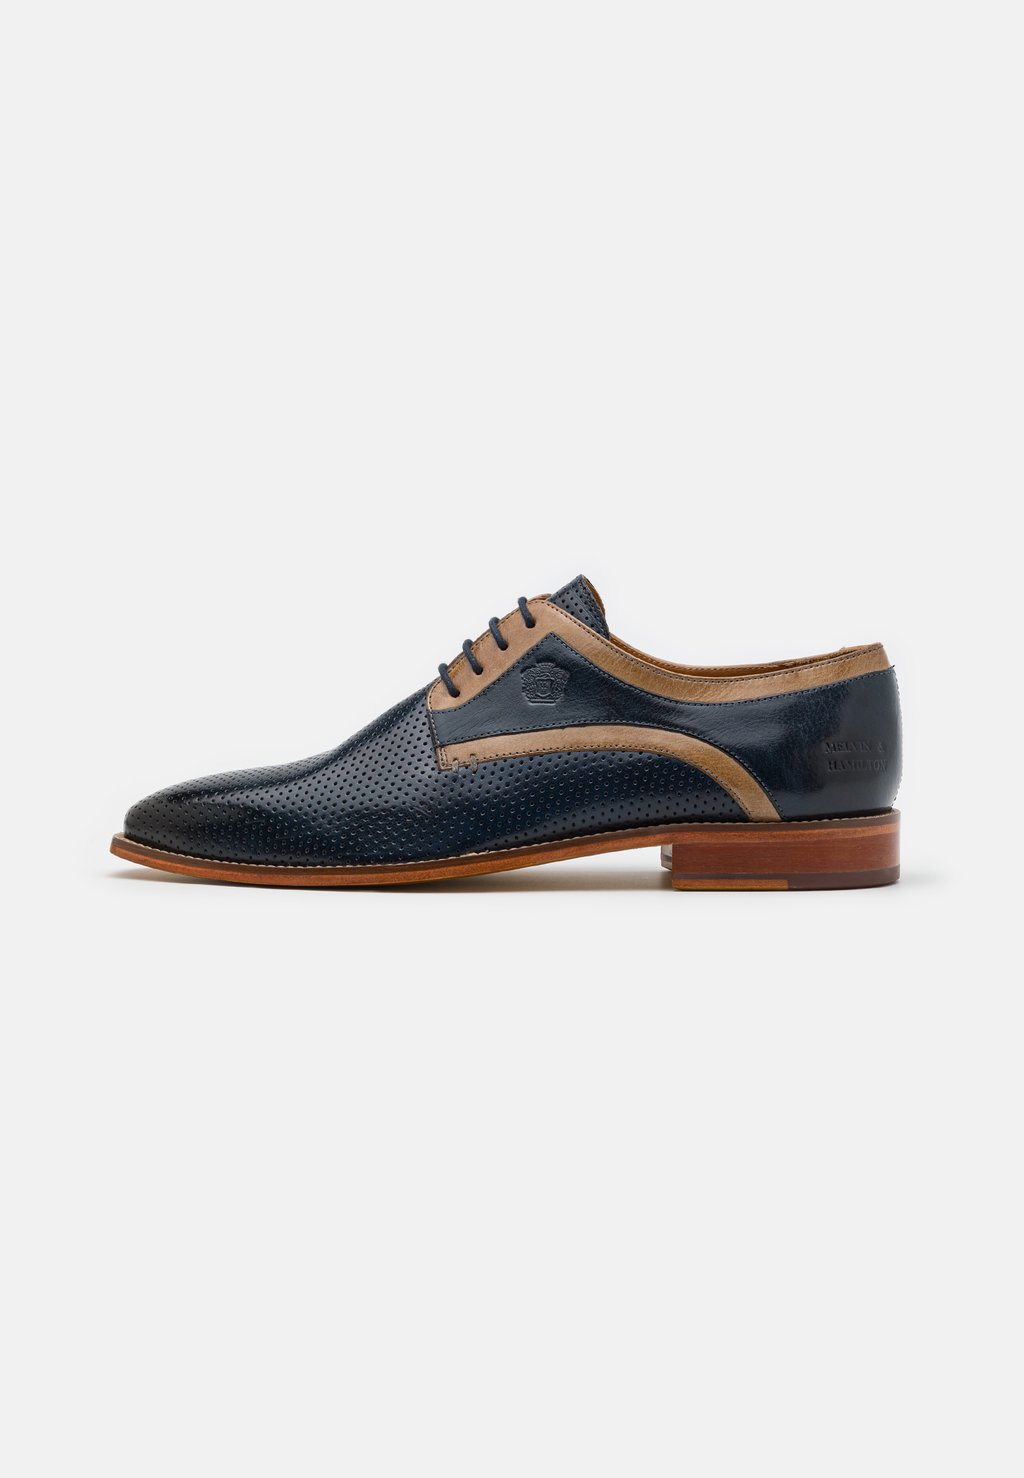 Элегантные туфли на шнуровке Alex 10 Melvin & Hamilton, цвет marine/morning grey/rich tan/natural